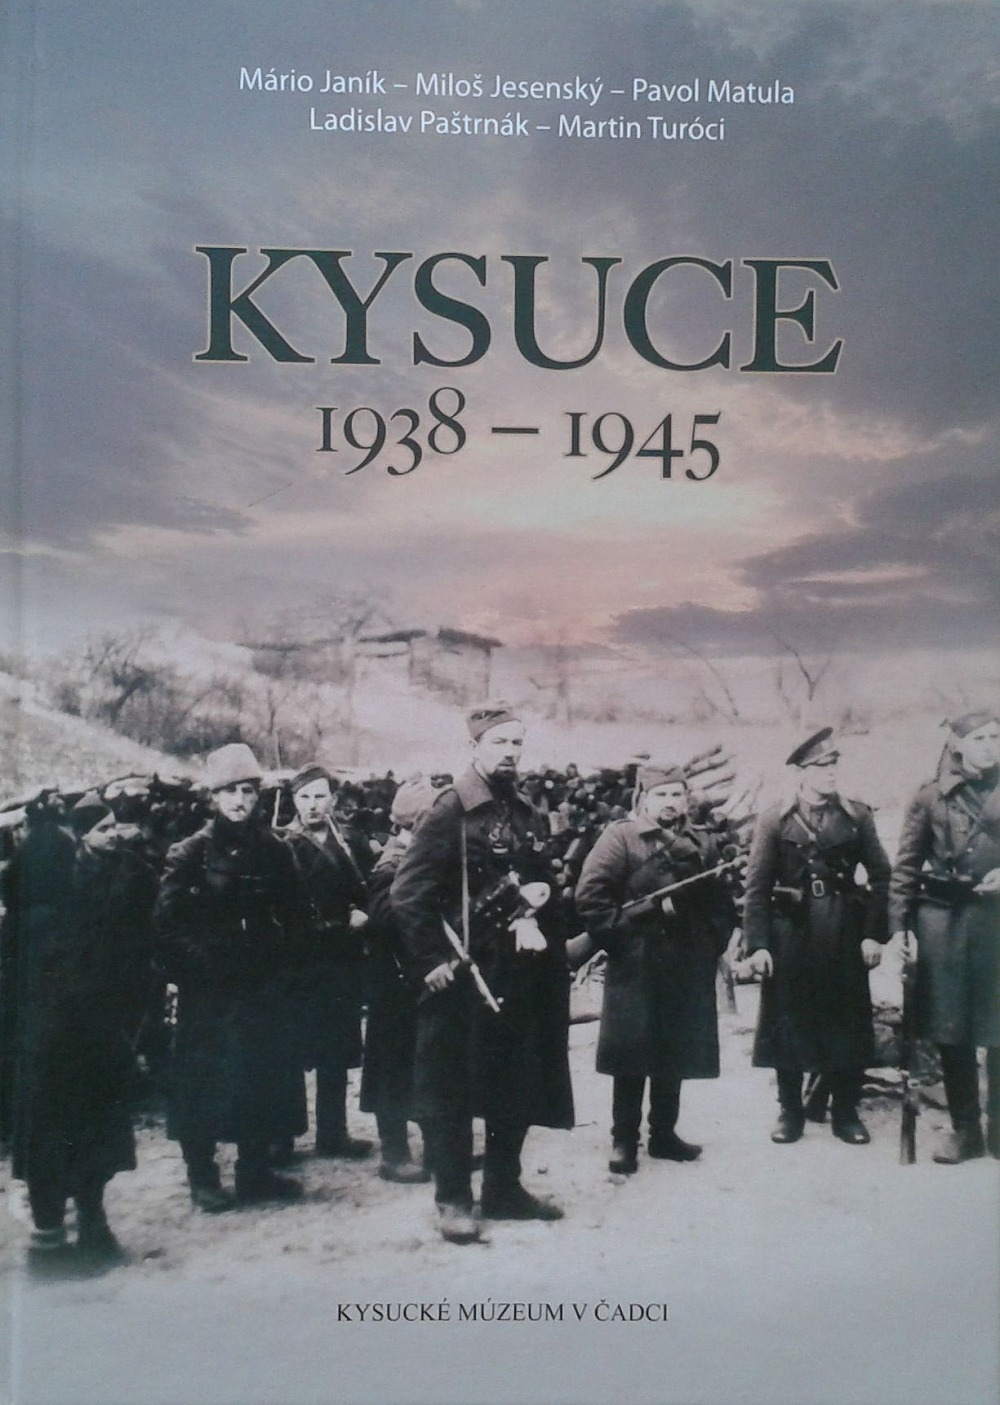 Kysuce 1938 - 1945